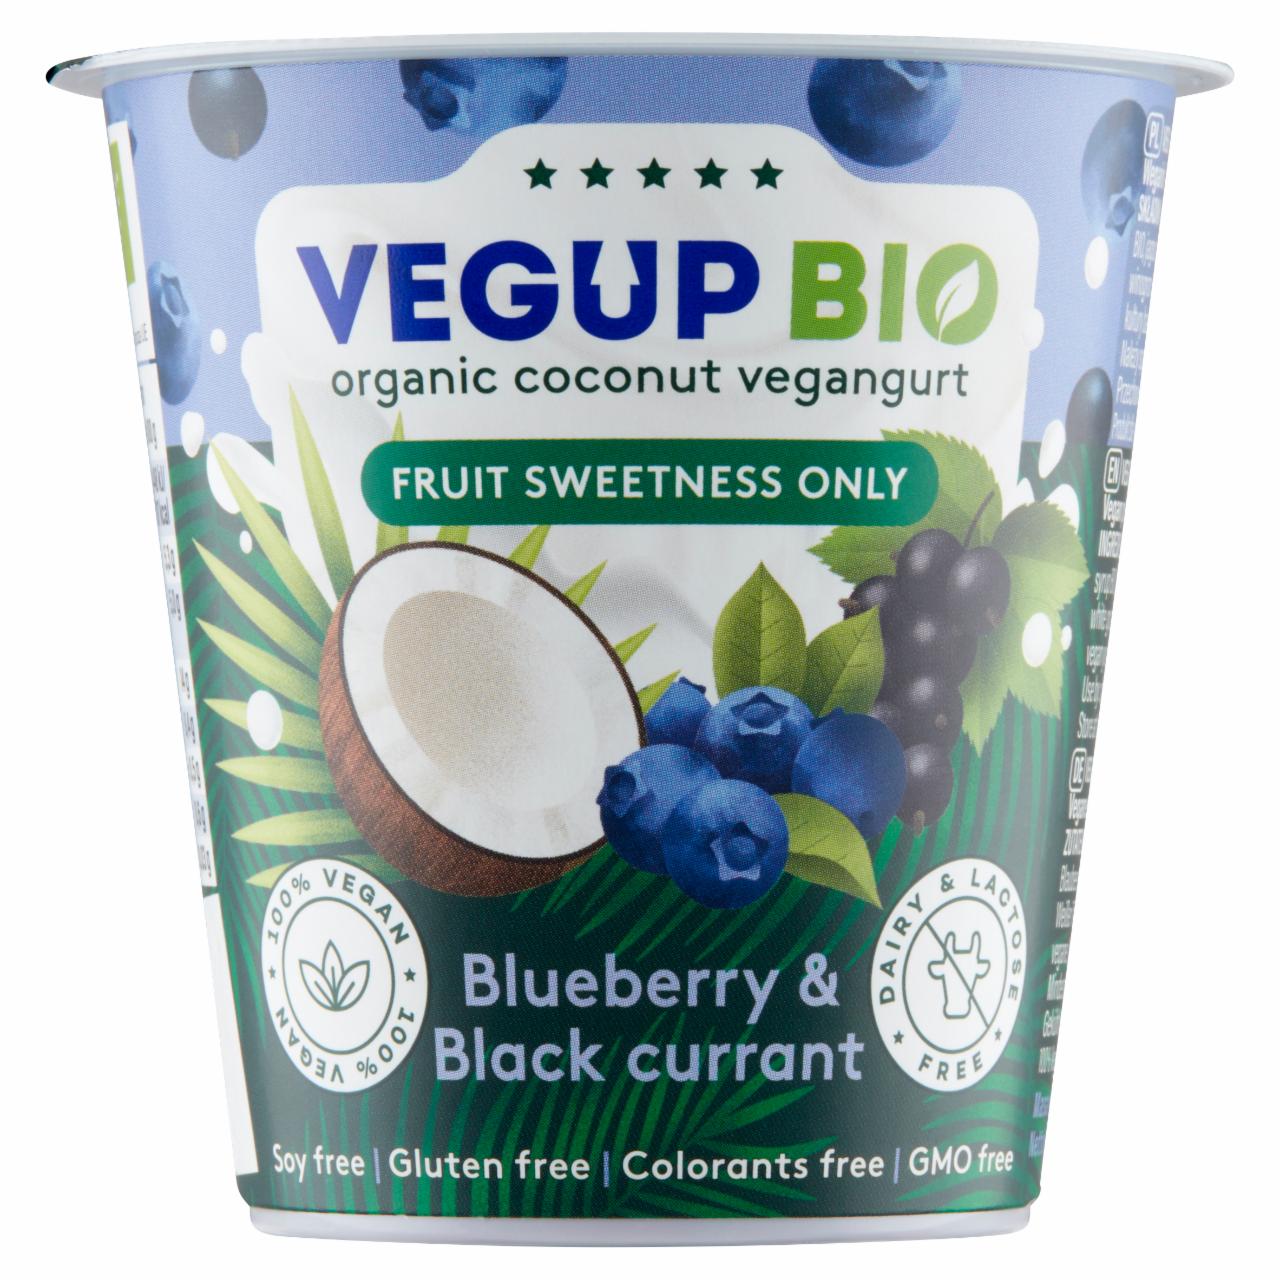 Zdjęcia - Vegup Bio Kokosowy vegangurt jagoda & czarna porzeczka 140 g